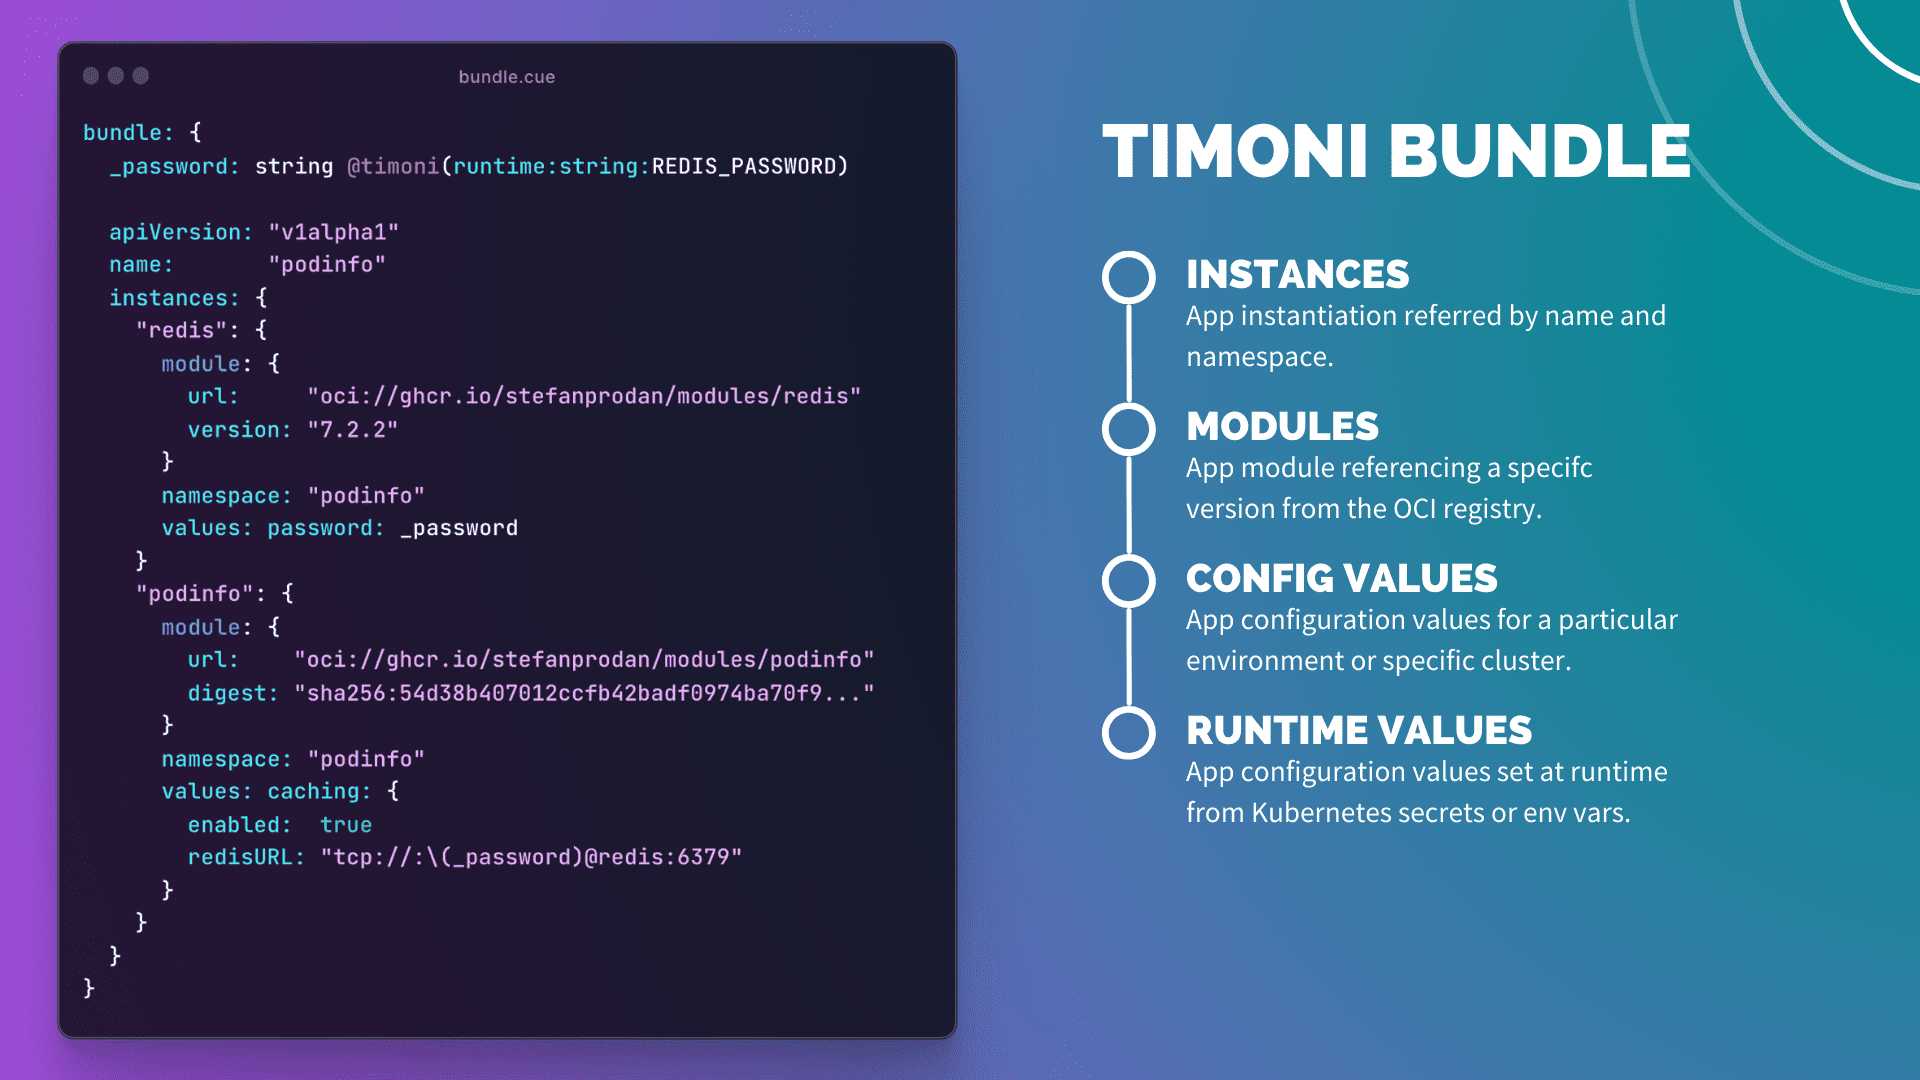 Timoni bundle